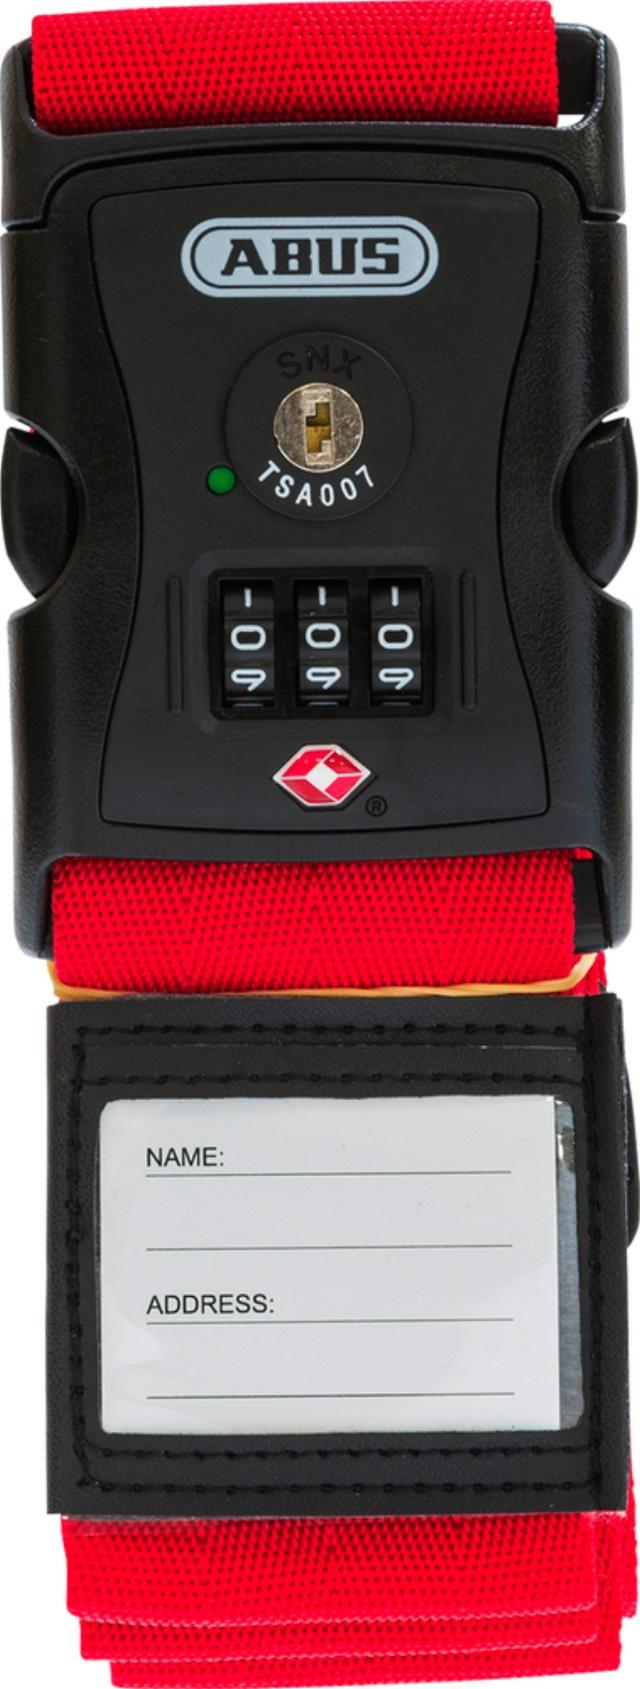 ABUS Koffergurt mit Codeschloss und TSA Rot